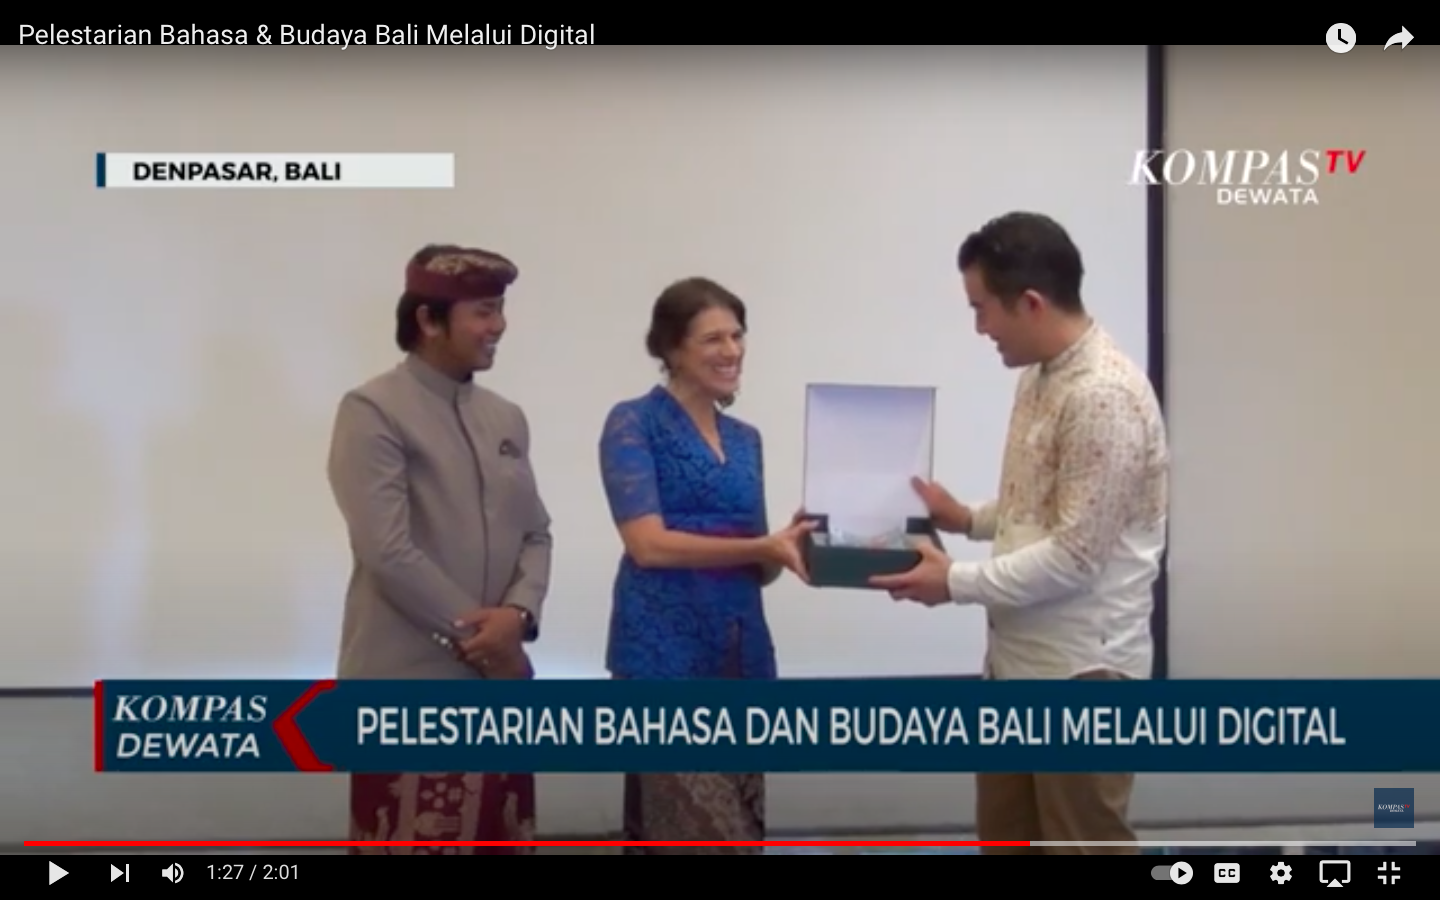 Pelestarian Bahasa & Budaya Bali Melalui Digital